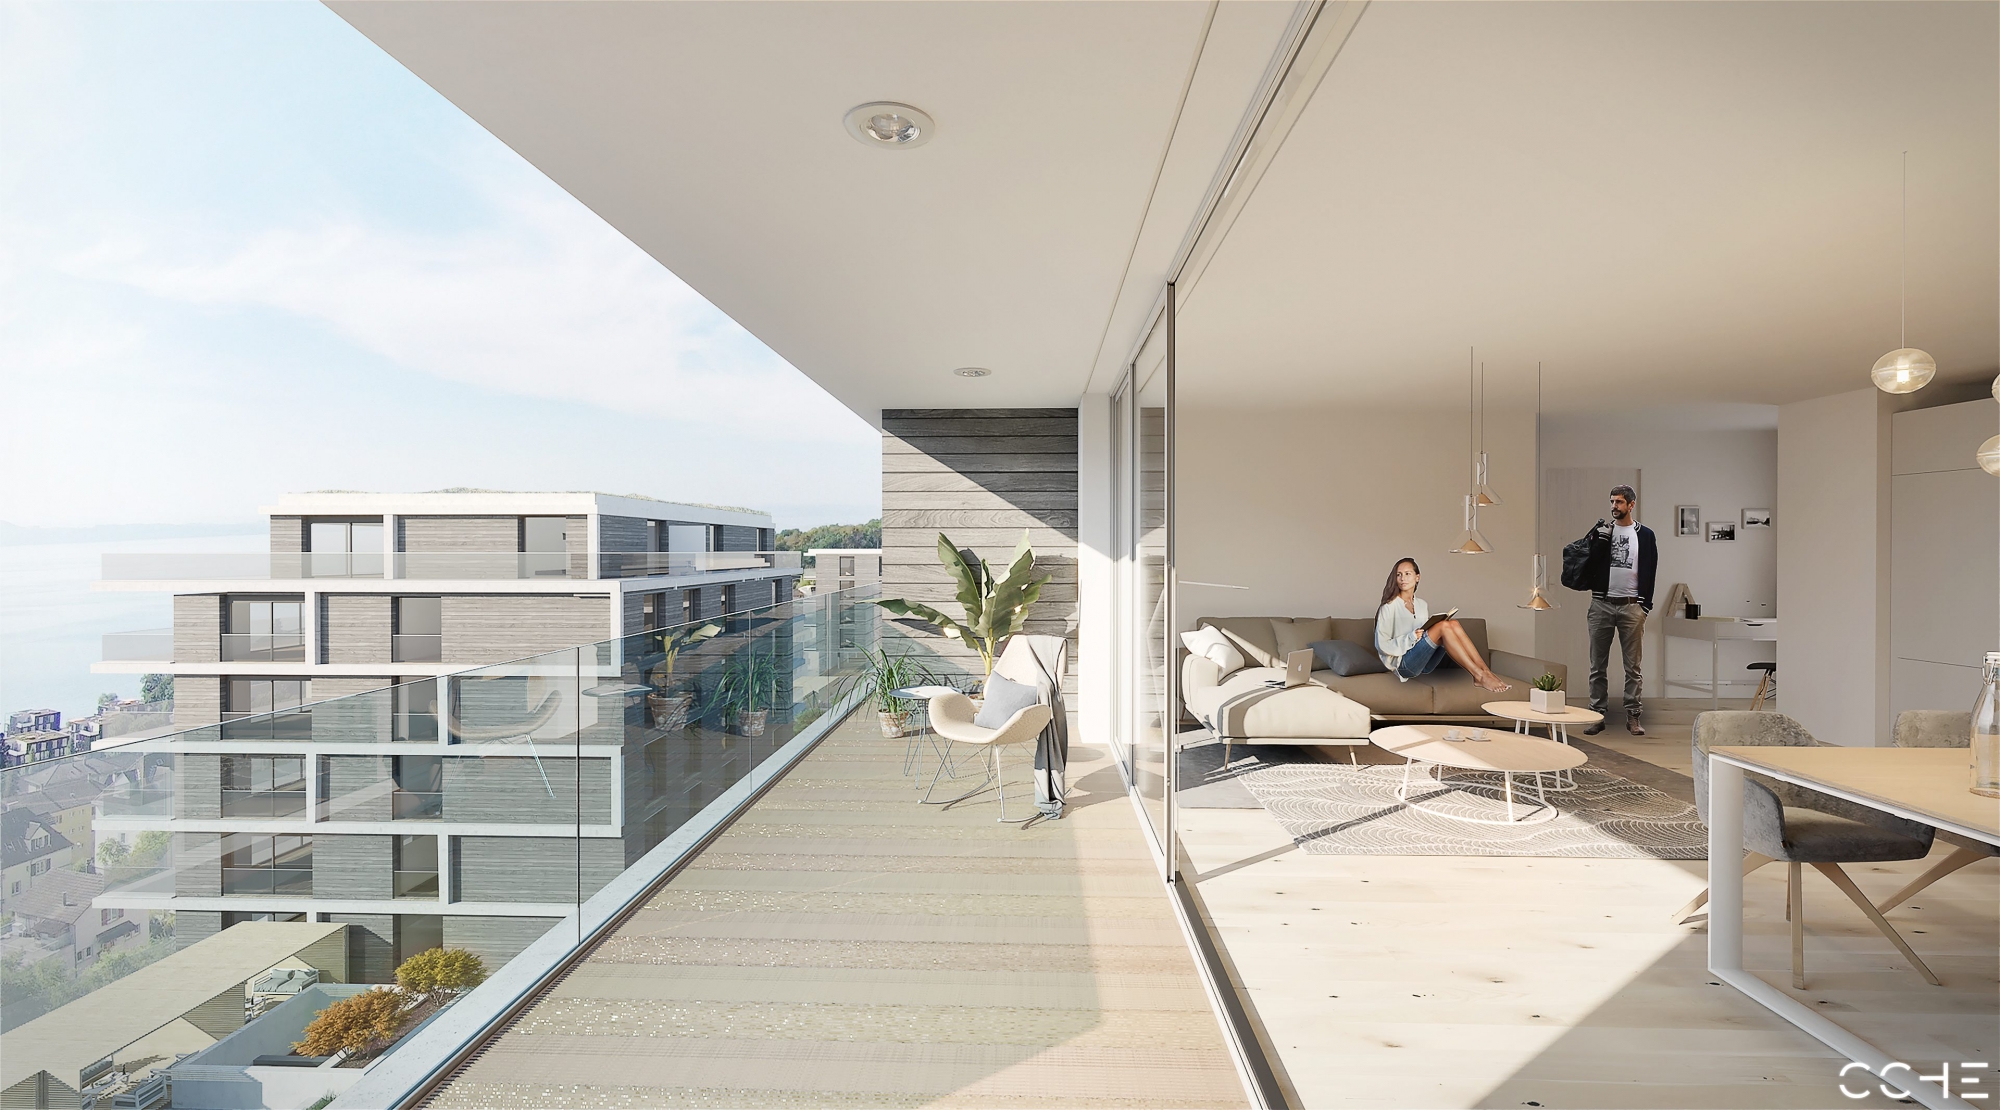 Image de synthèse du balcon d'un des appartements qui seront construits à Neuchâtel, sur la friche industrielle Metalor.